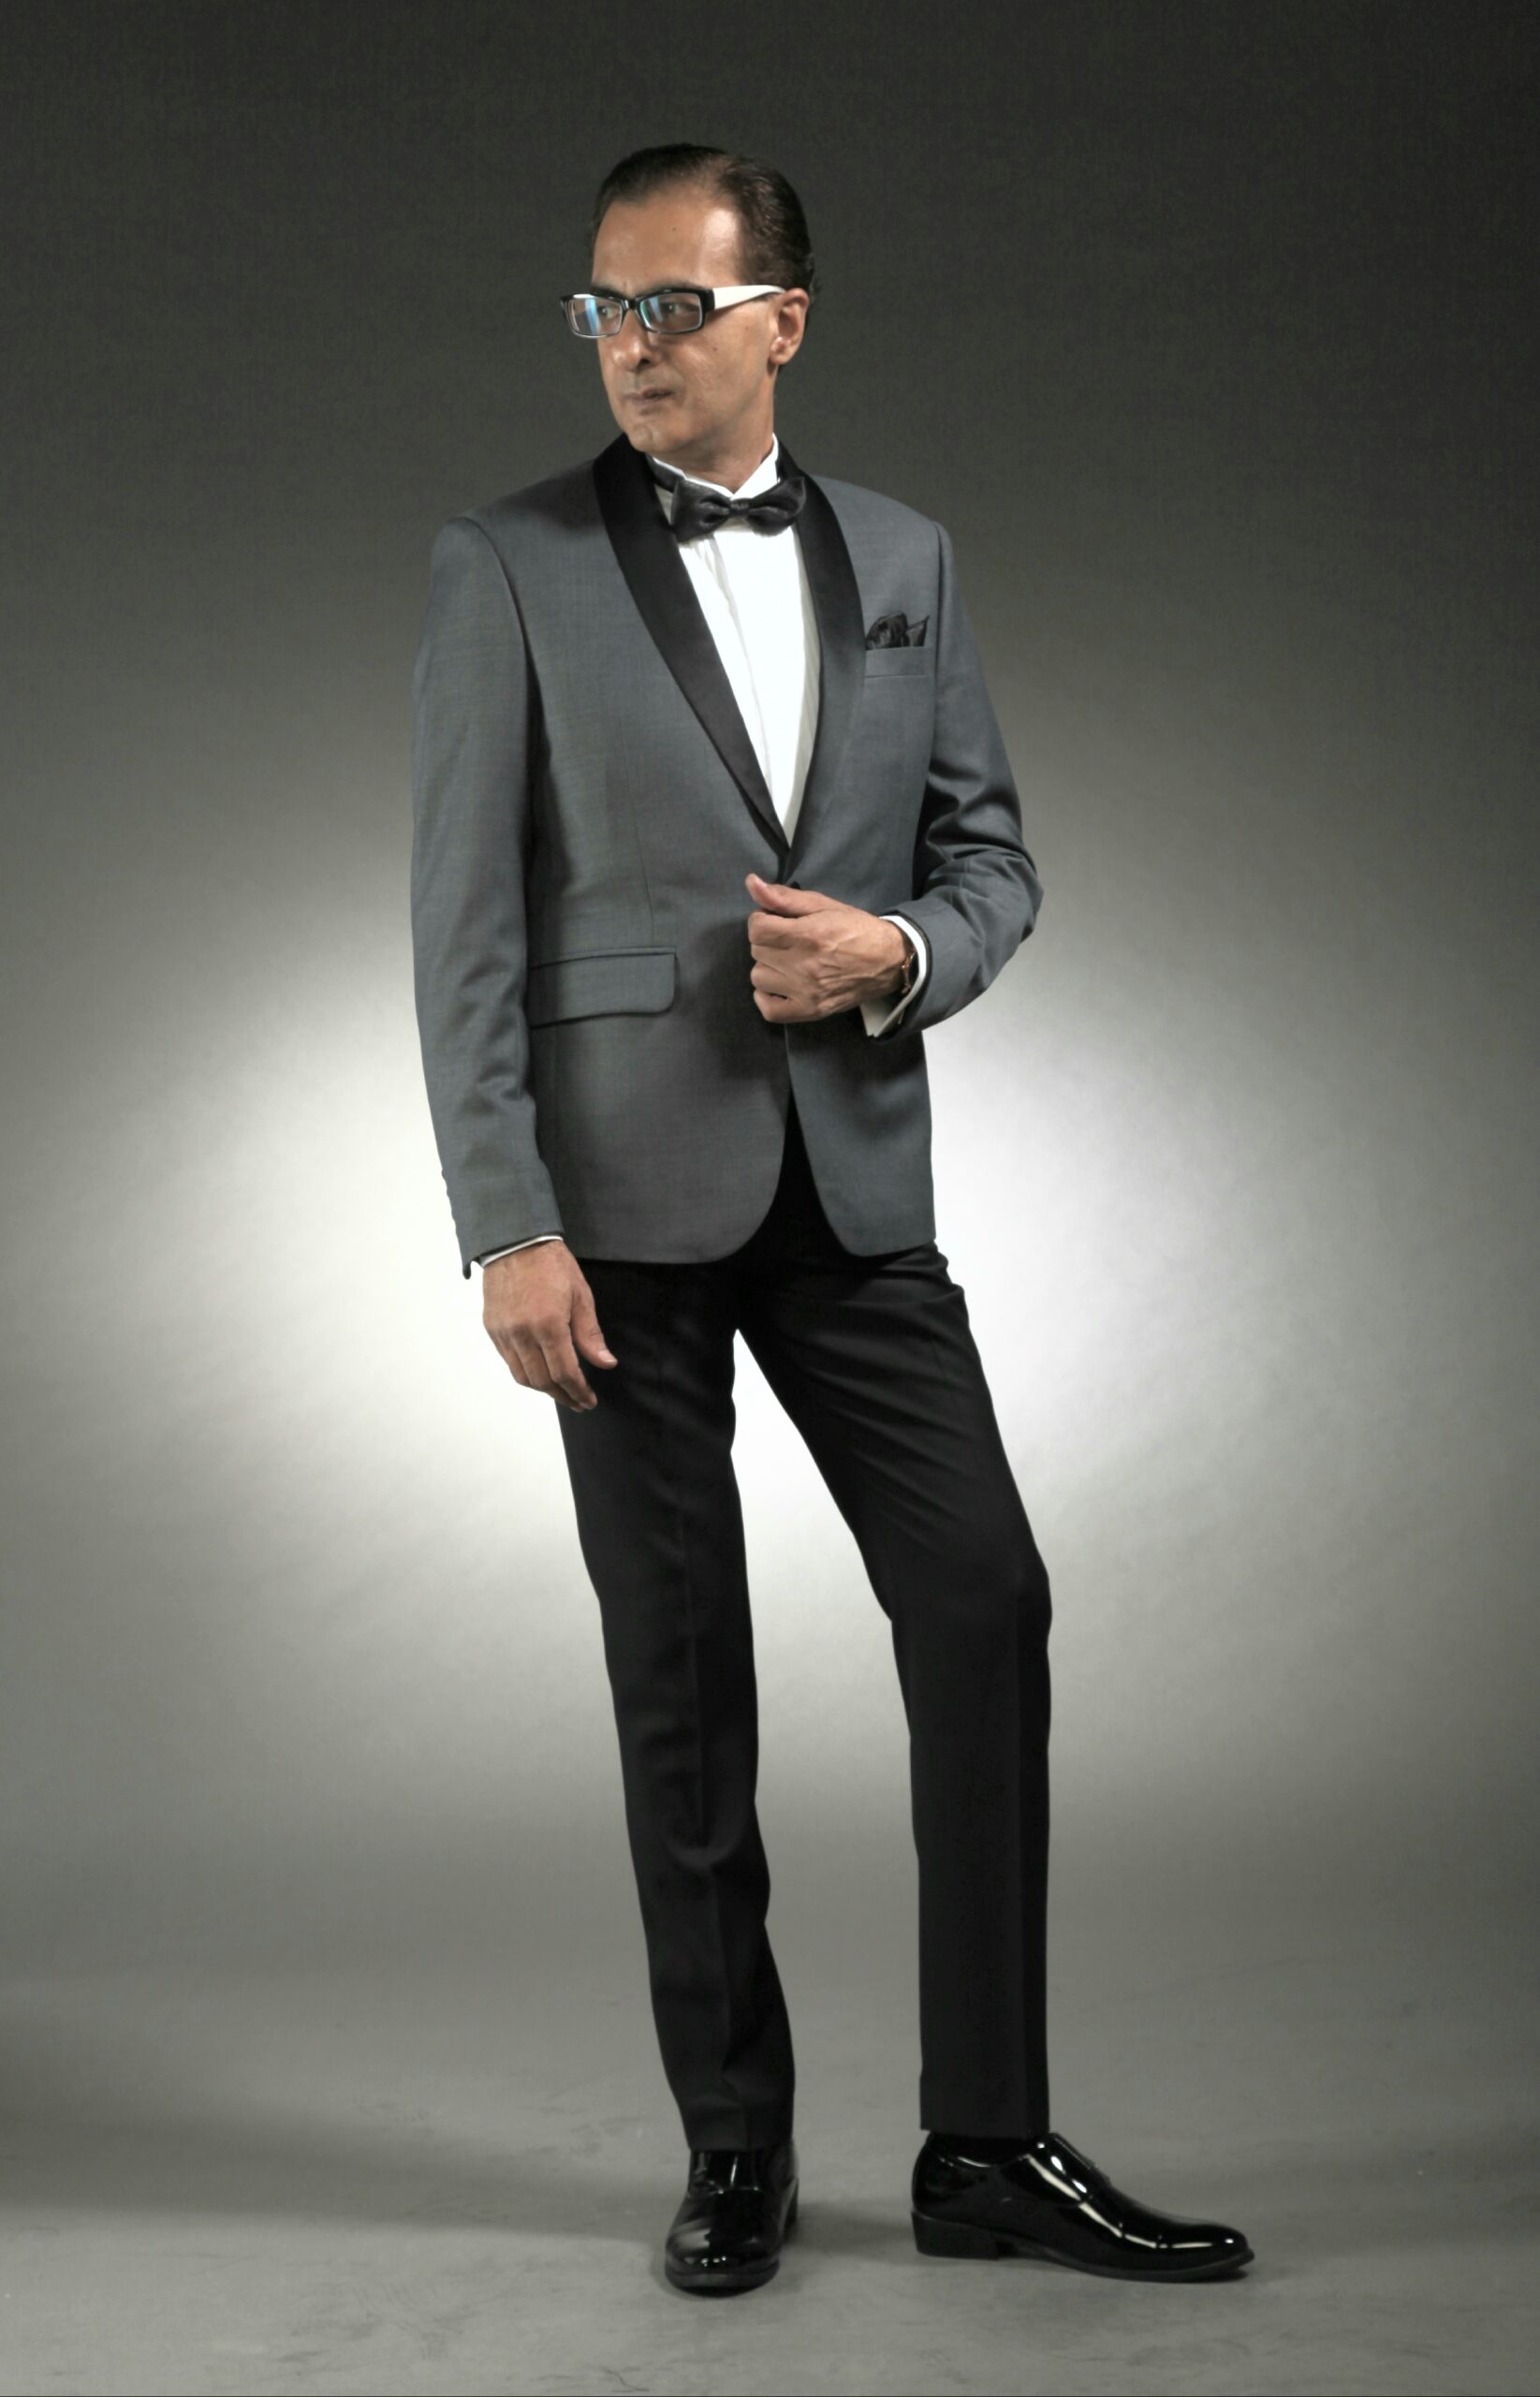 MST-5065-01-rent_rental_hire_tuxedo_suit_black_tie_suit_designer_suits_shop_tailor_tailors_singapore_wedding